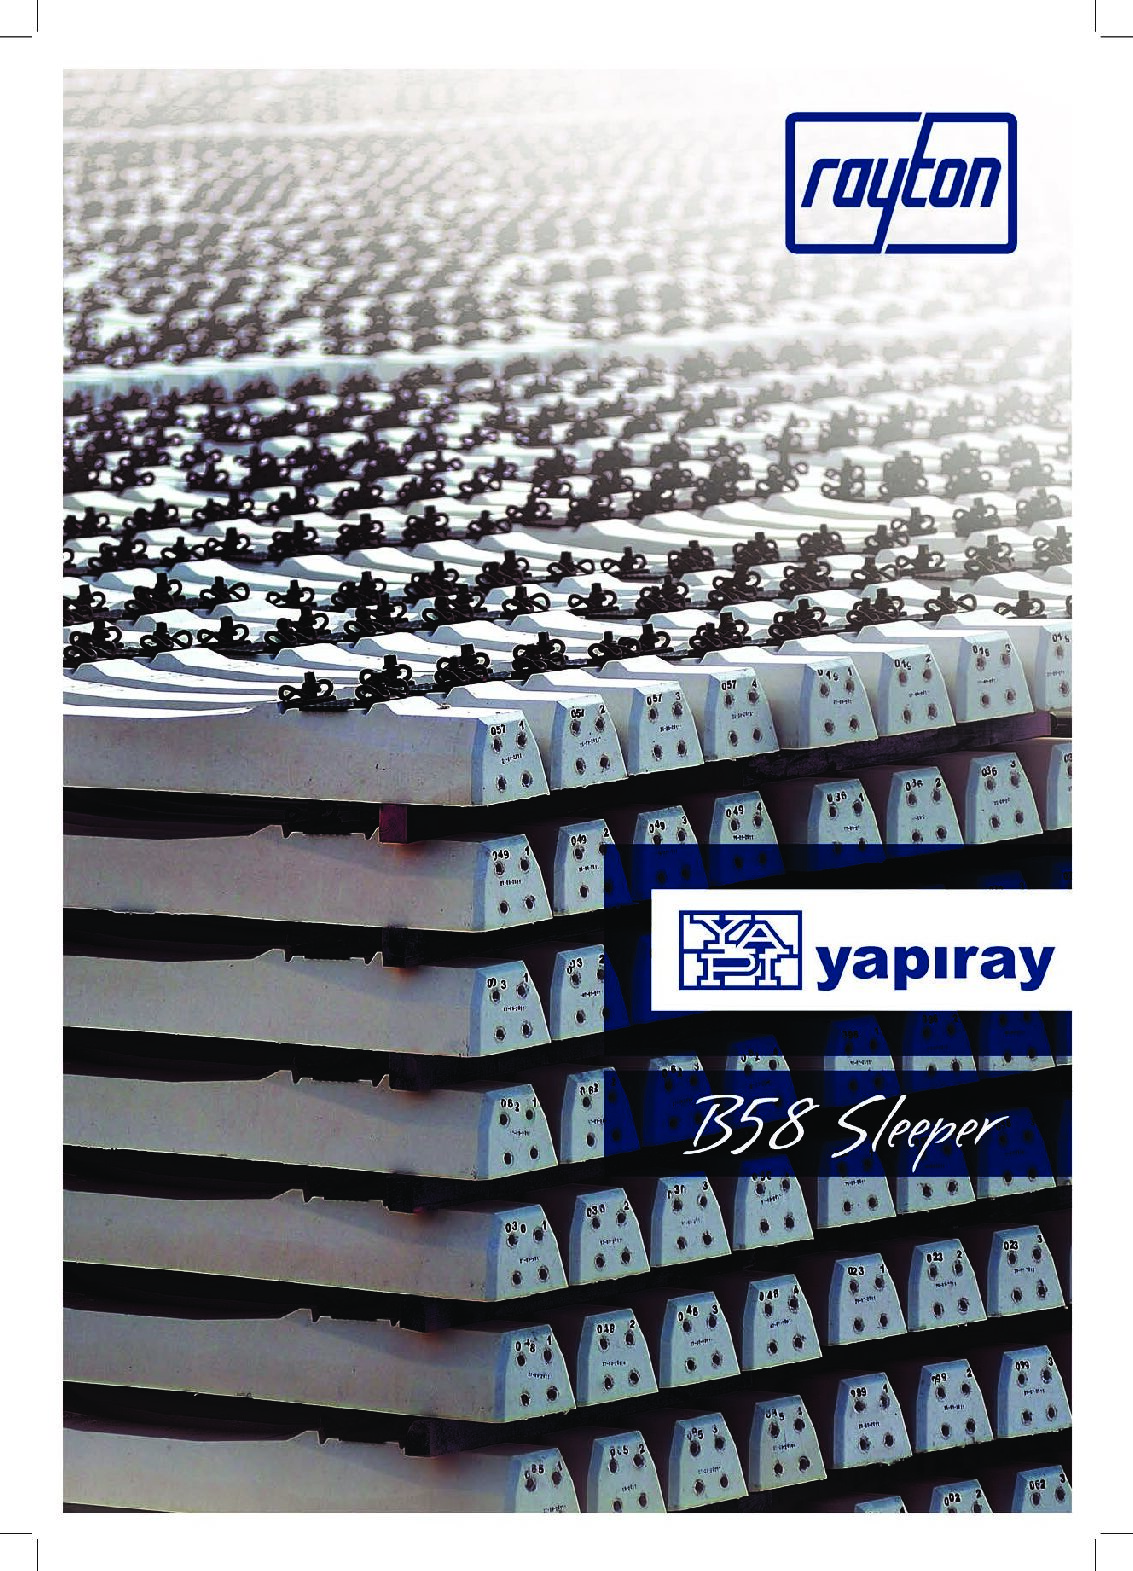 YAPIRAY – B58 Sleeper